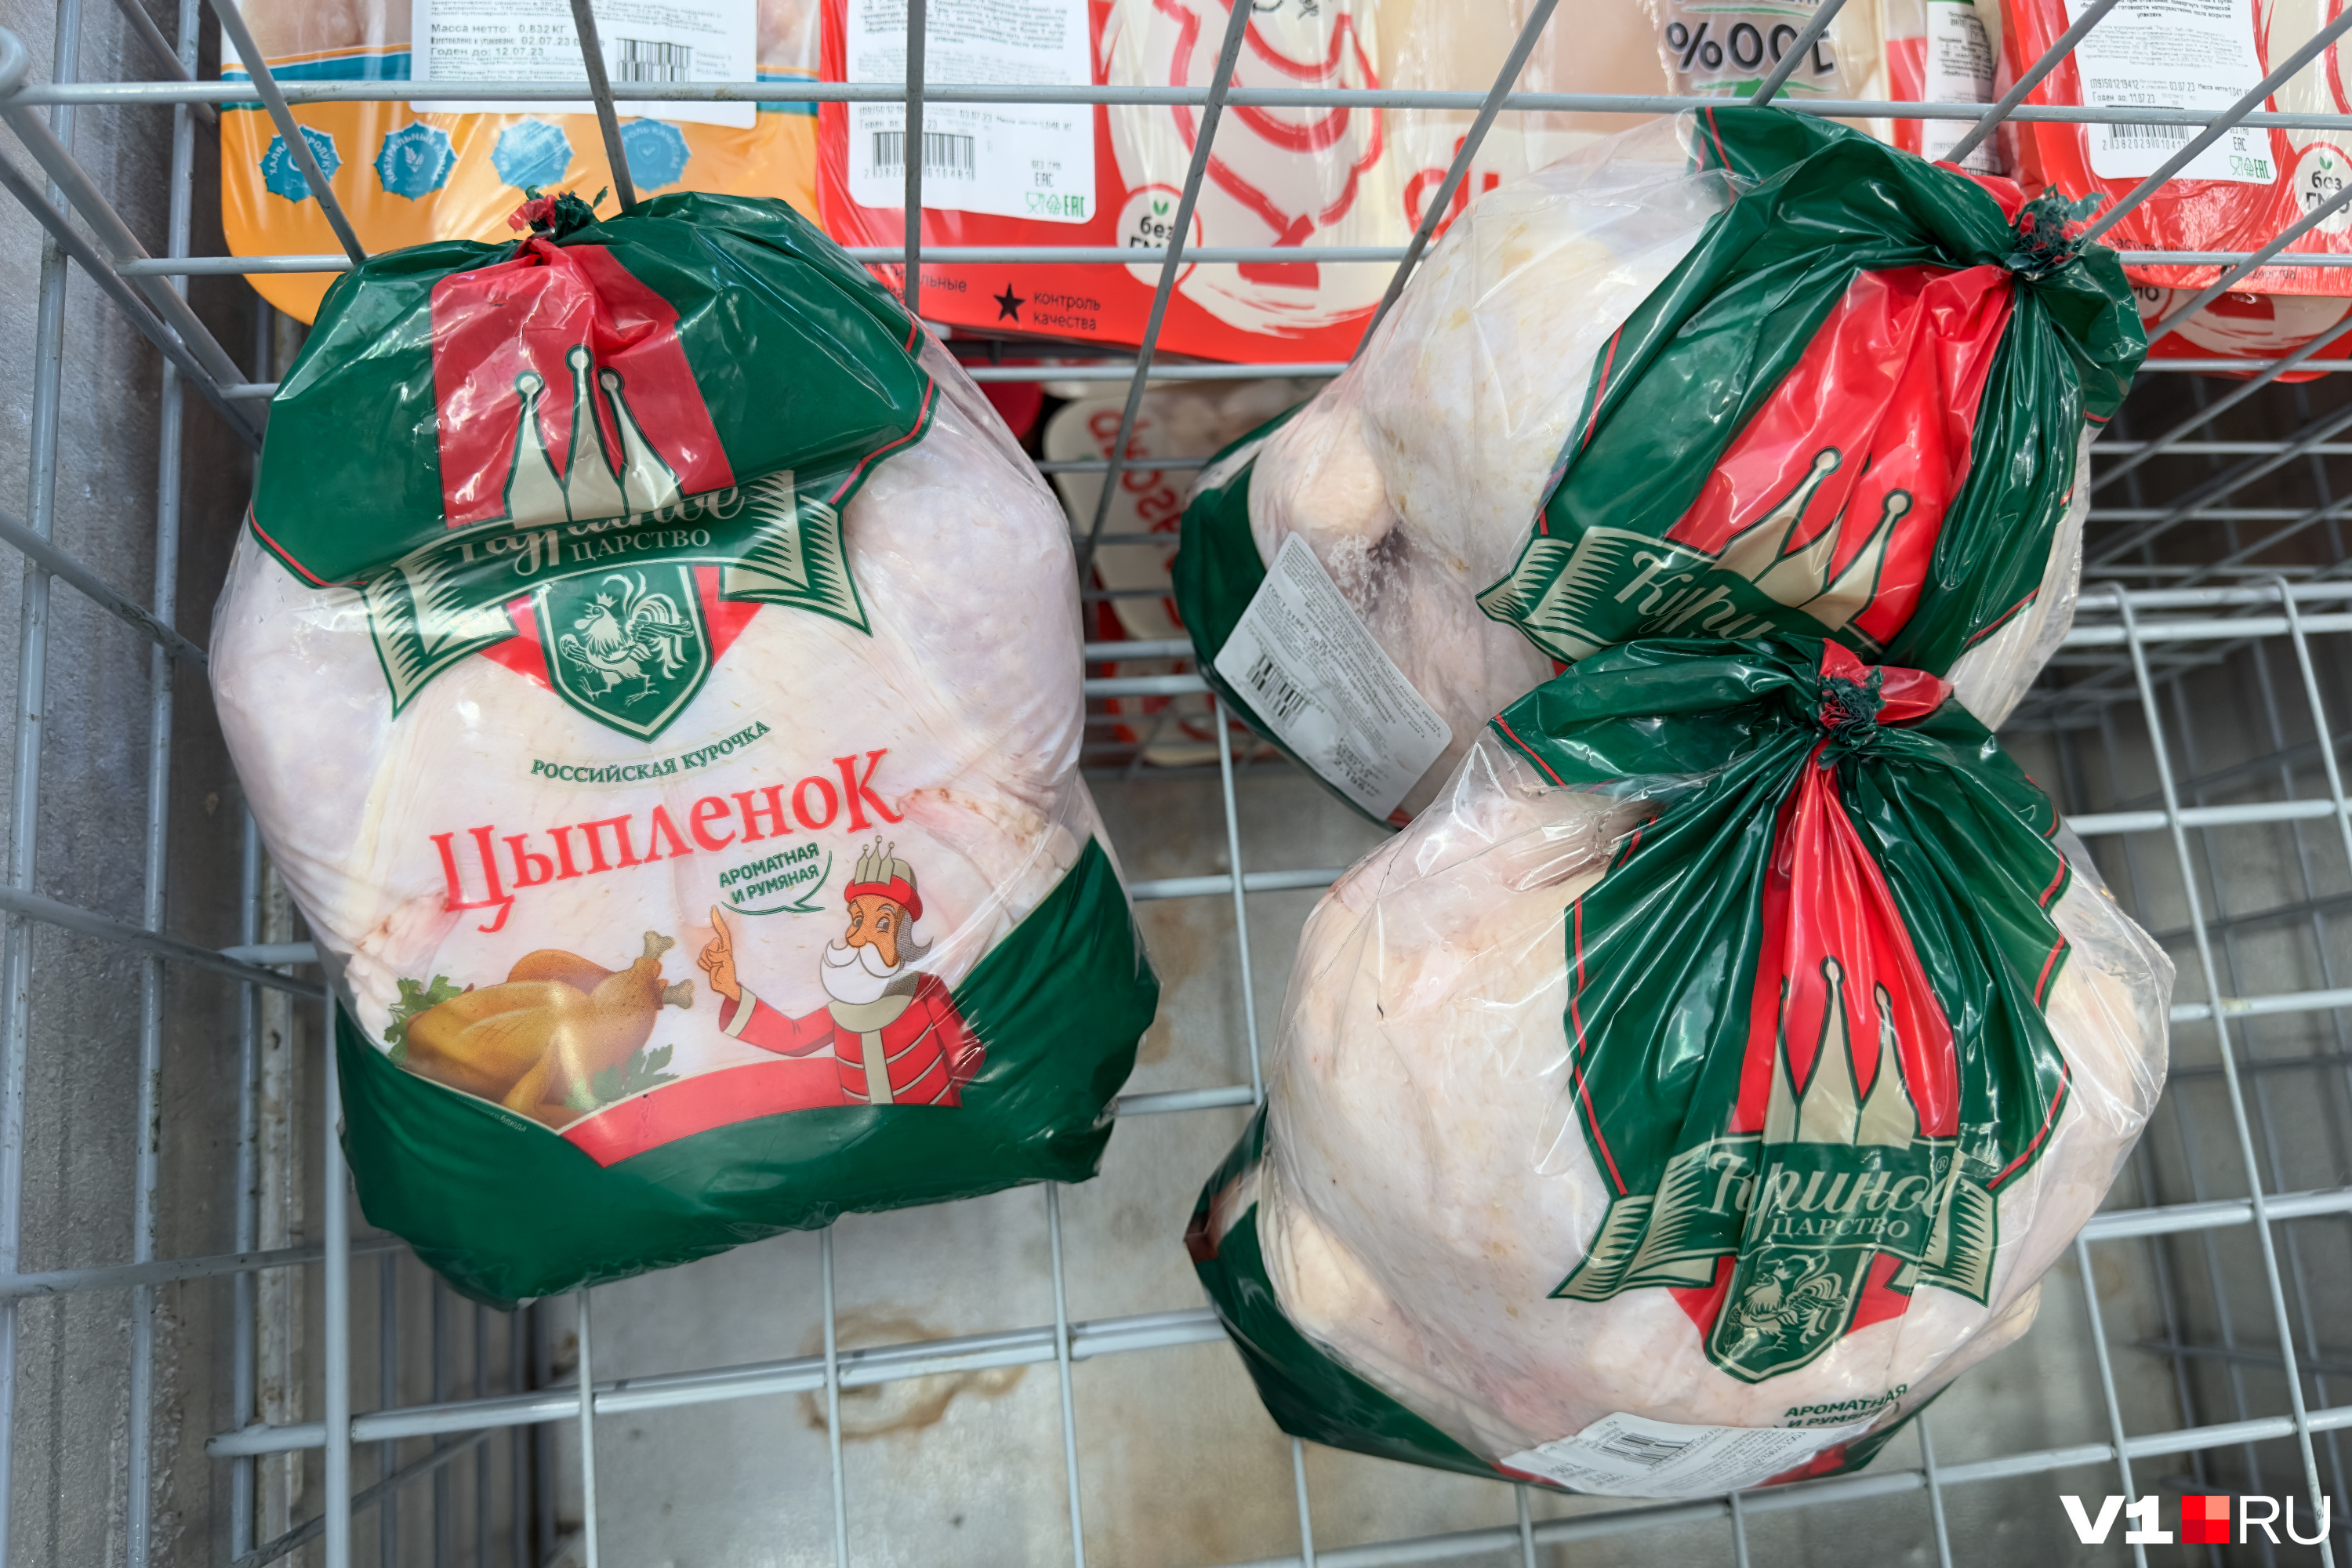 Тушка цыпленка в среднем обойдется в 300 рублей